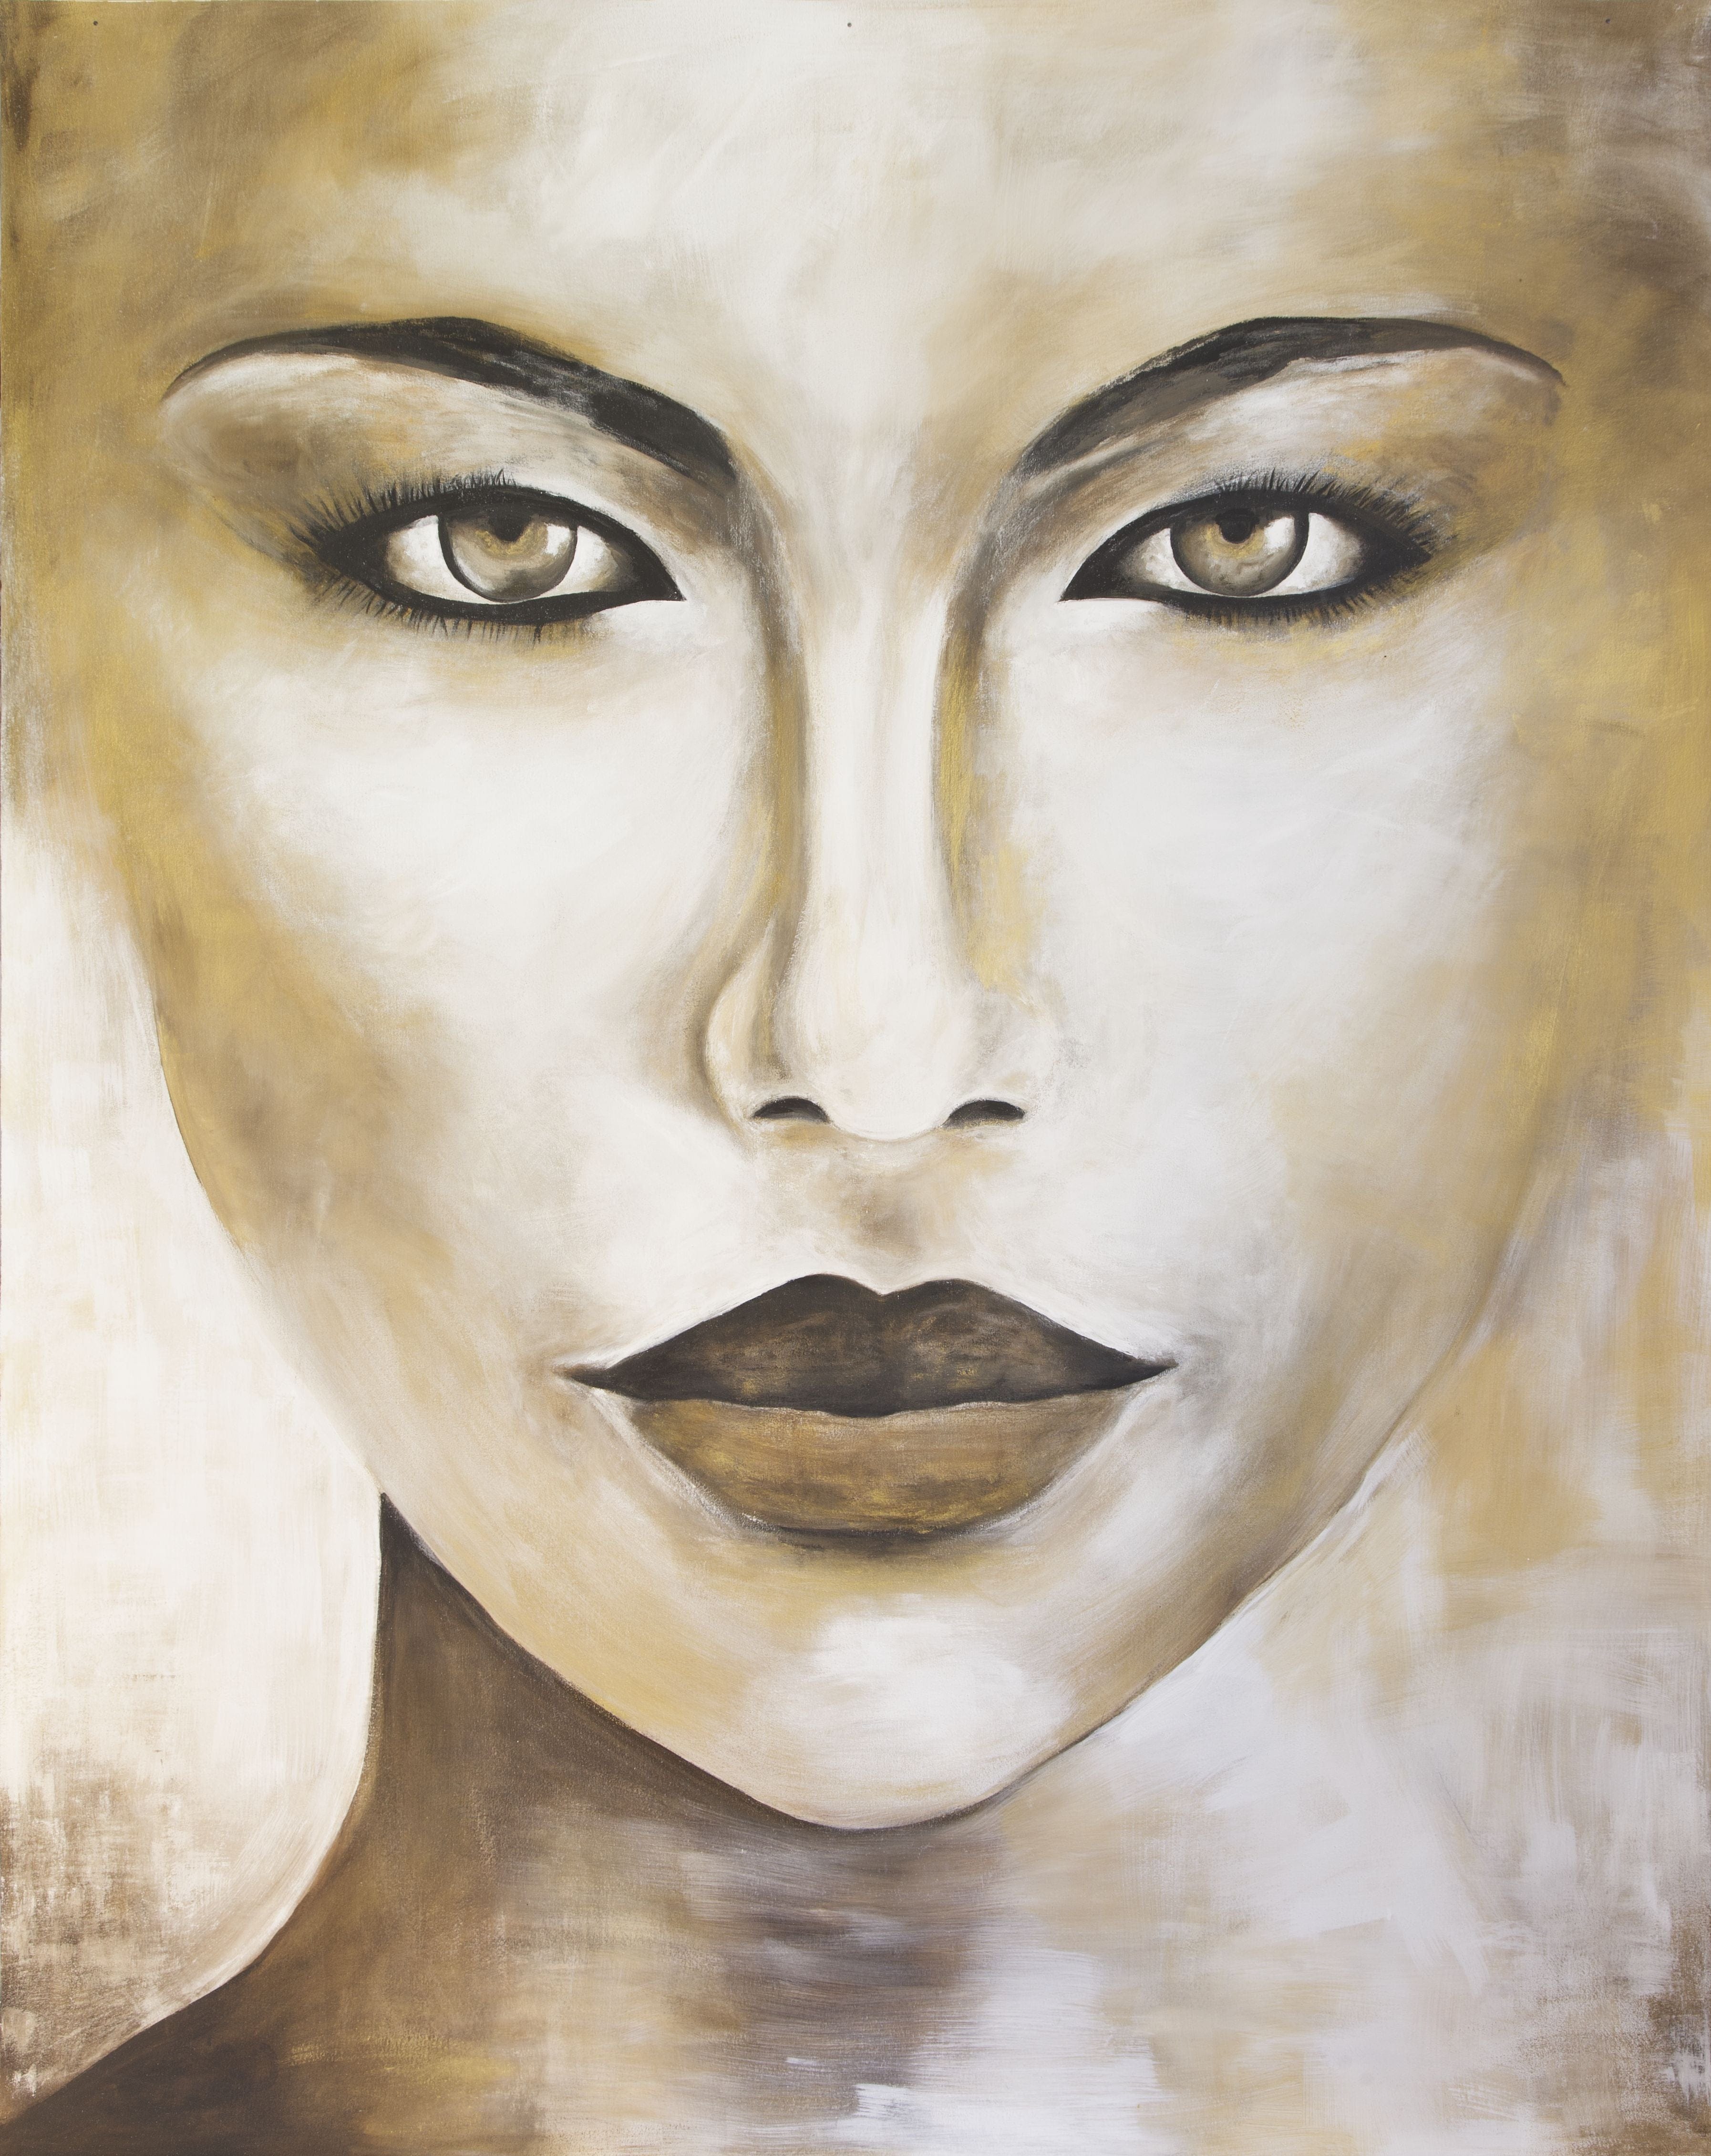 €425,00 Schilderij Vrouw "Golden Face" 170x210cm